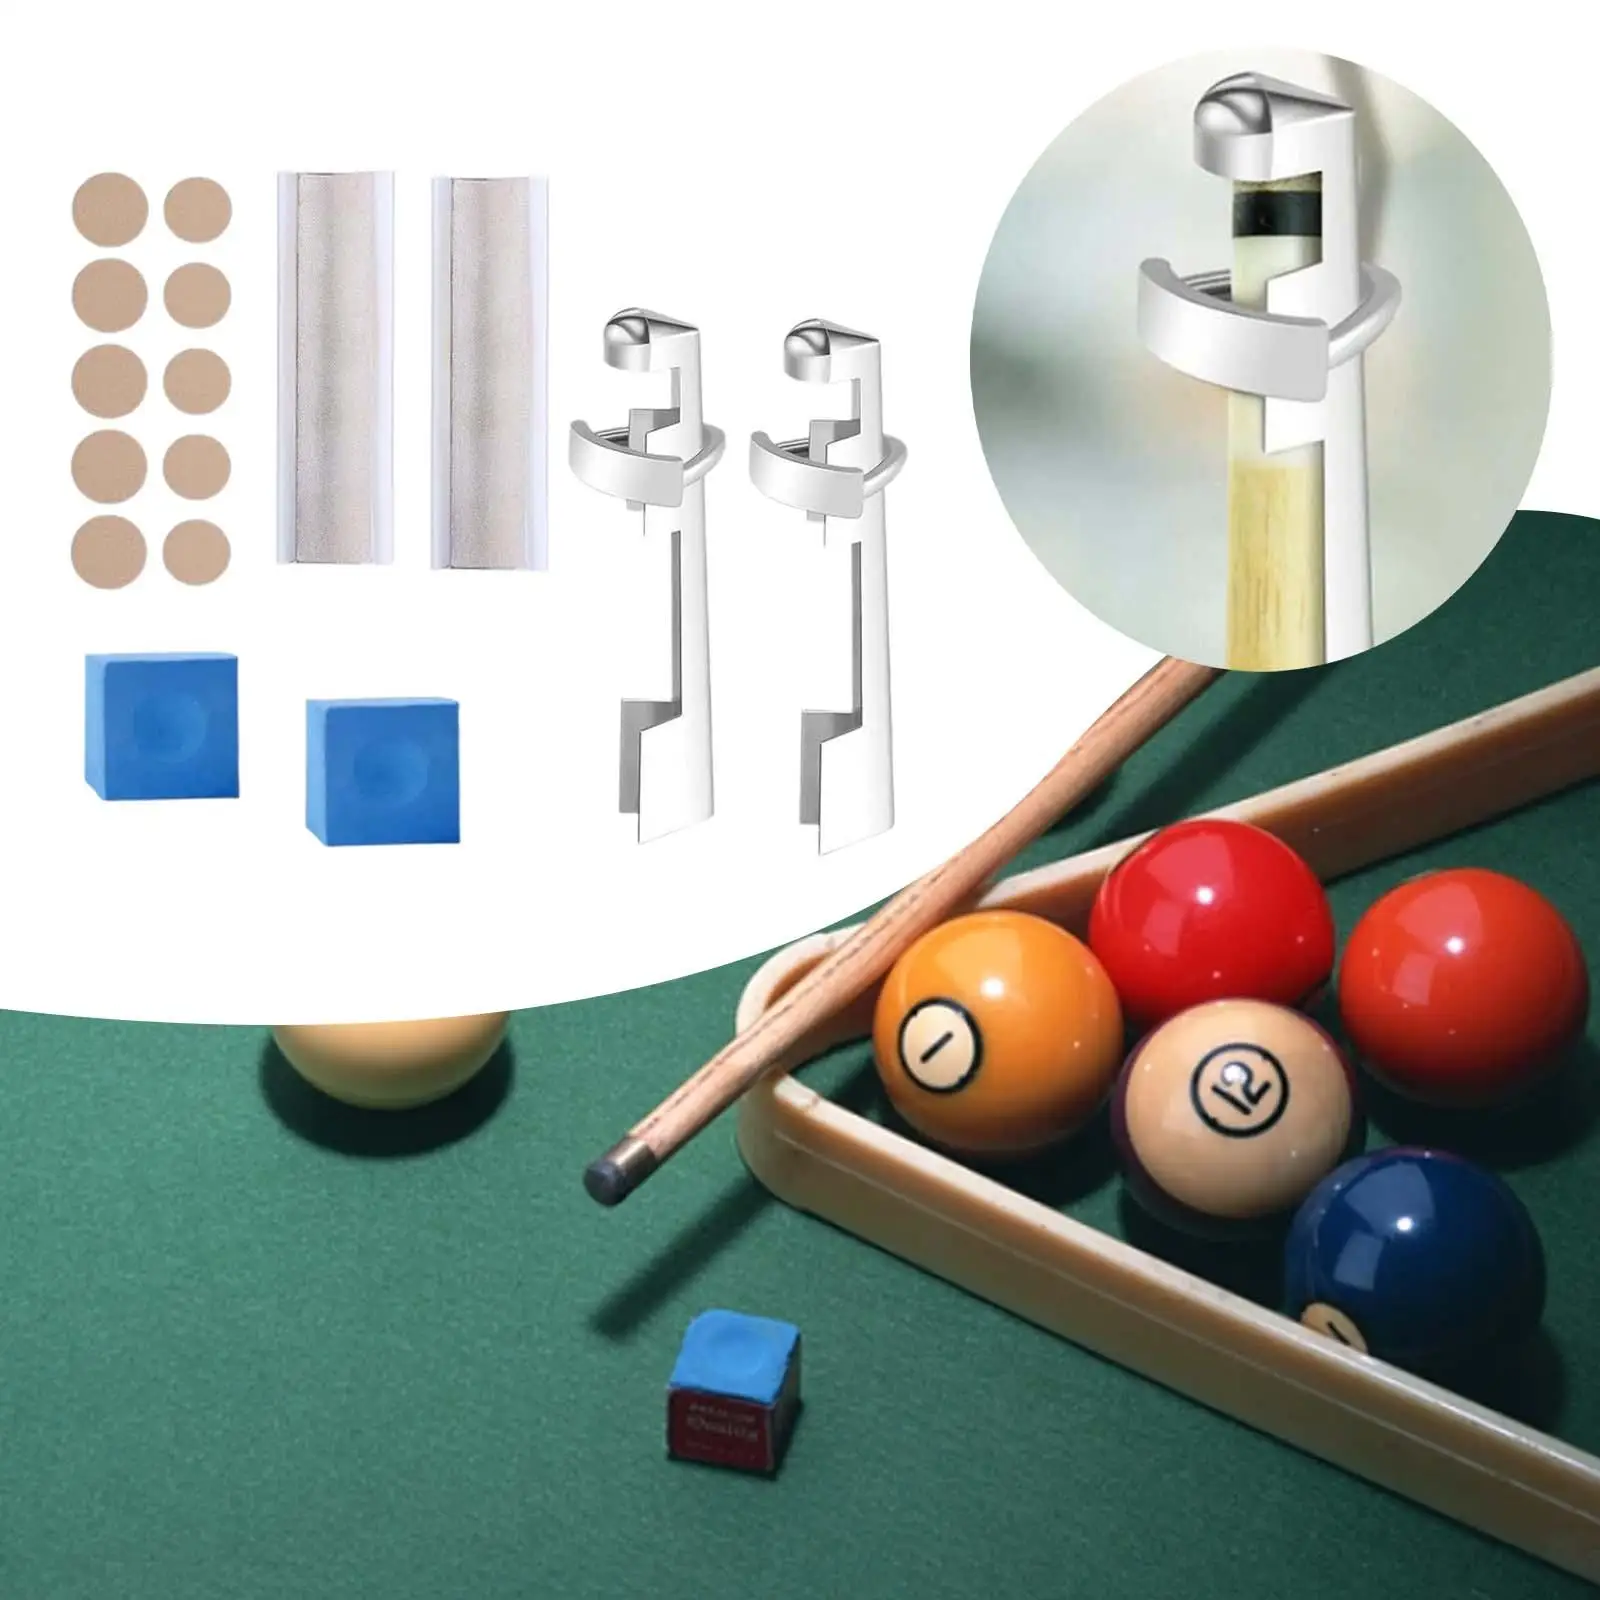 16x Pool Cue Tip Repair Kit Billiard Cue Tips Replacement Kit Portable Billiards Pool Tip Shaper Cue Repair Set Pool Table